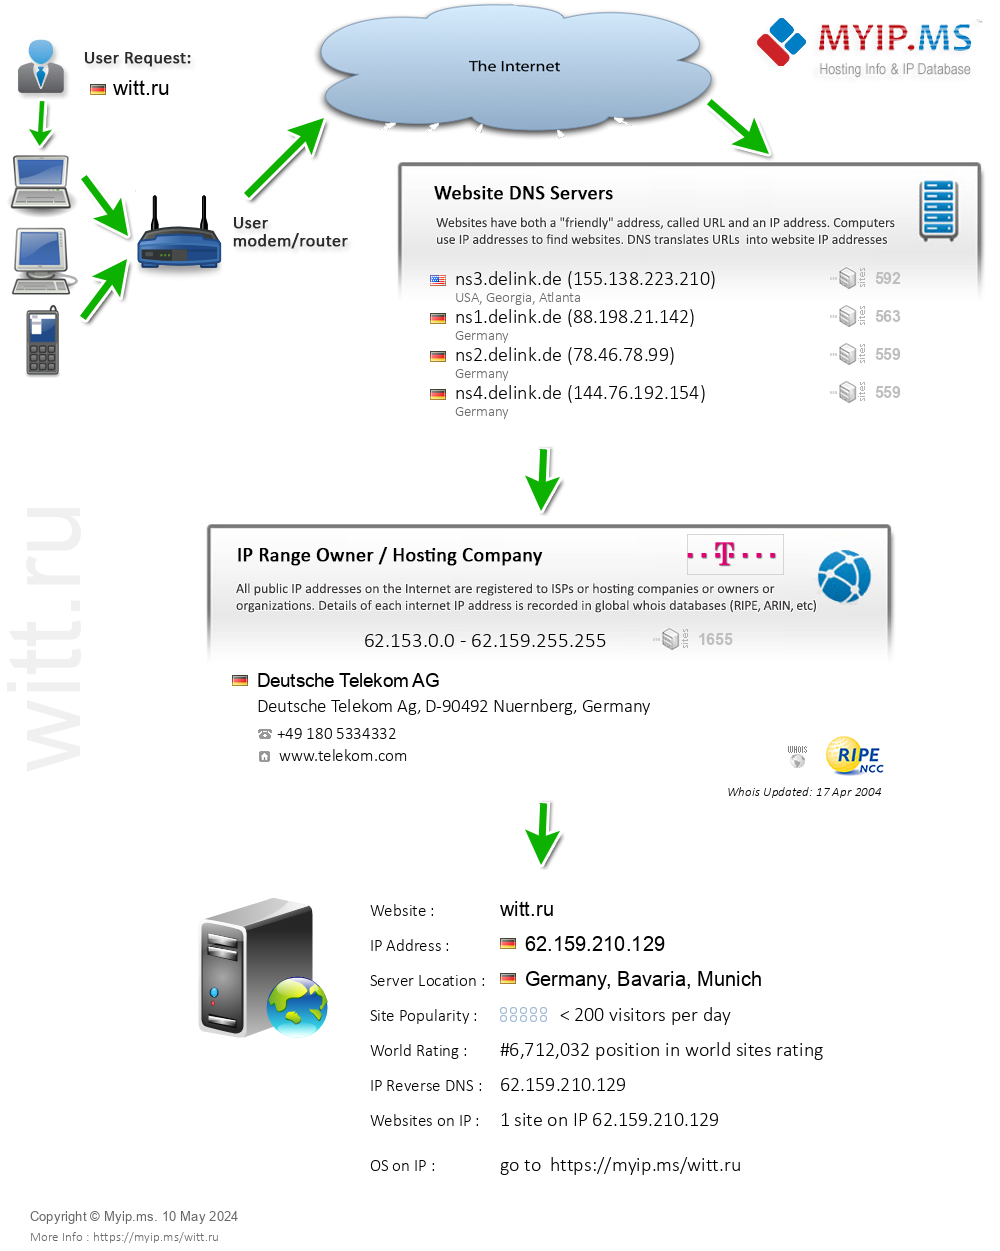 Witt.ru - Website Hosting Visual IP Diagram